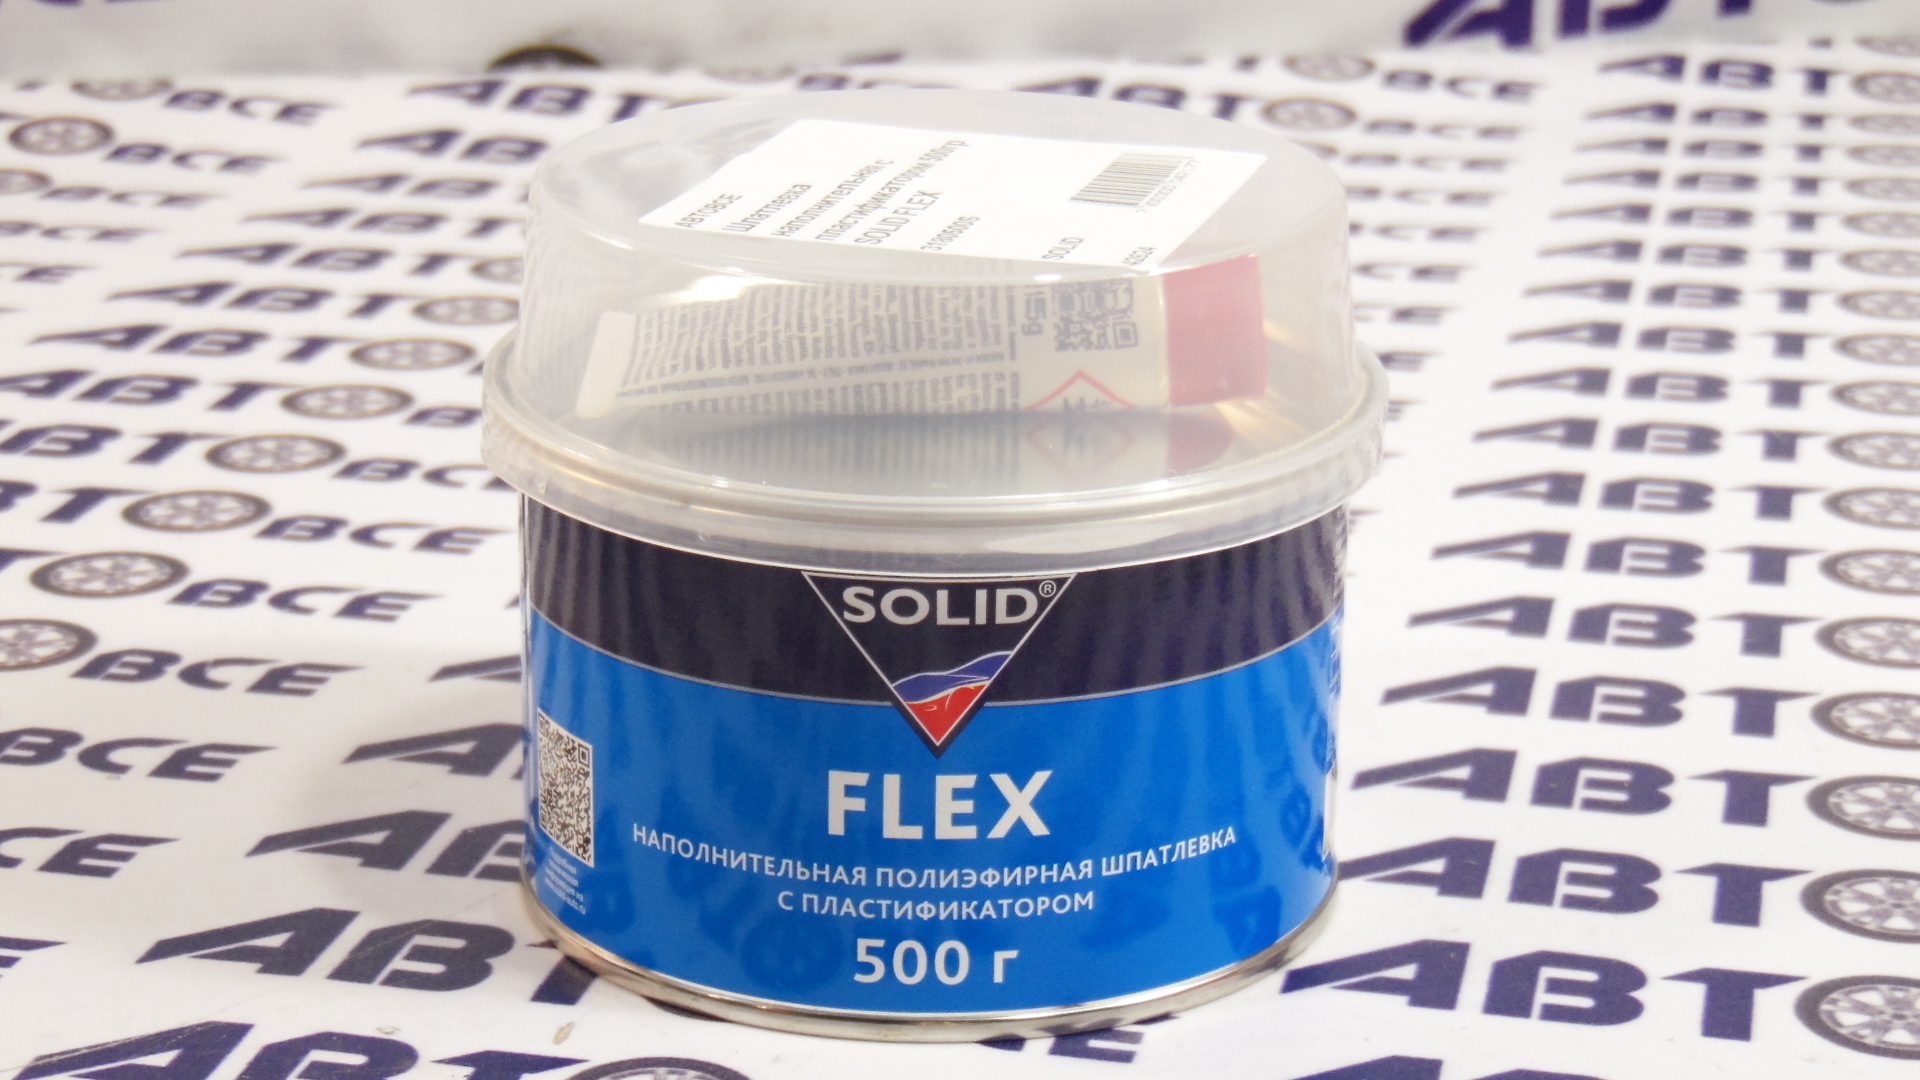 Шпатлевка наполнительная с пластификатором 500гр FLEX SOLID